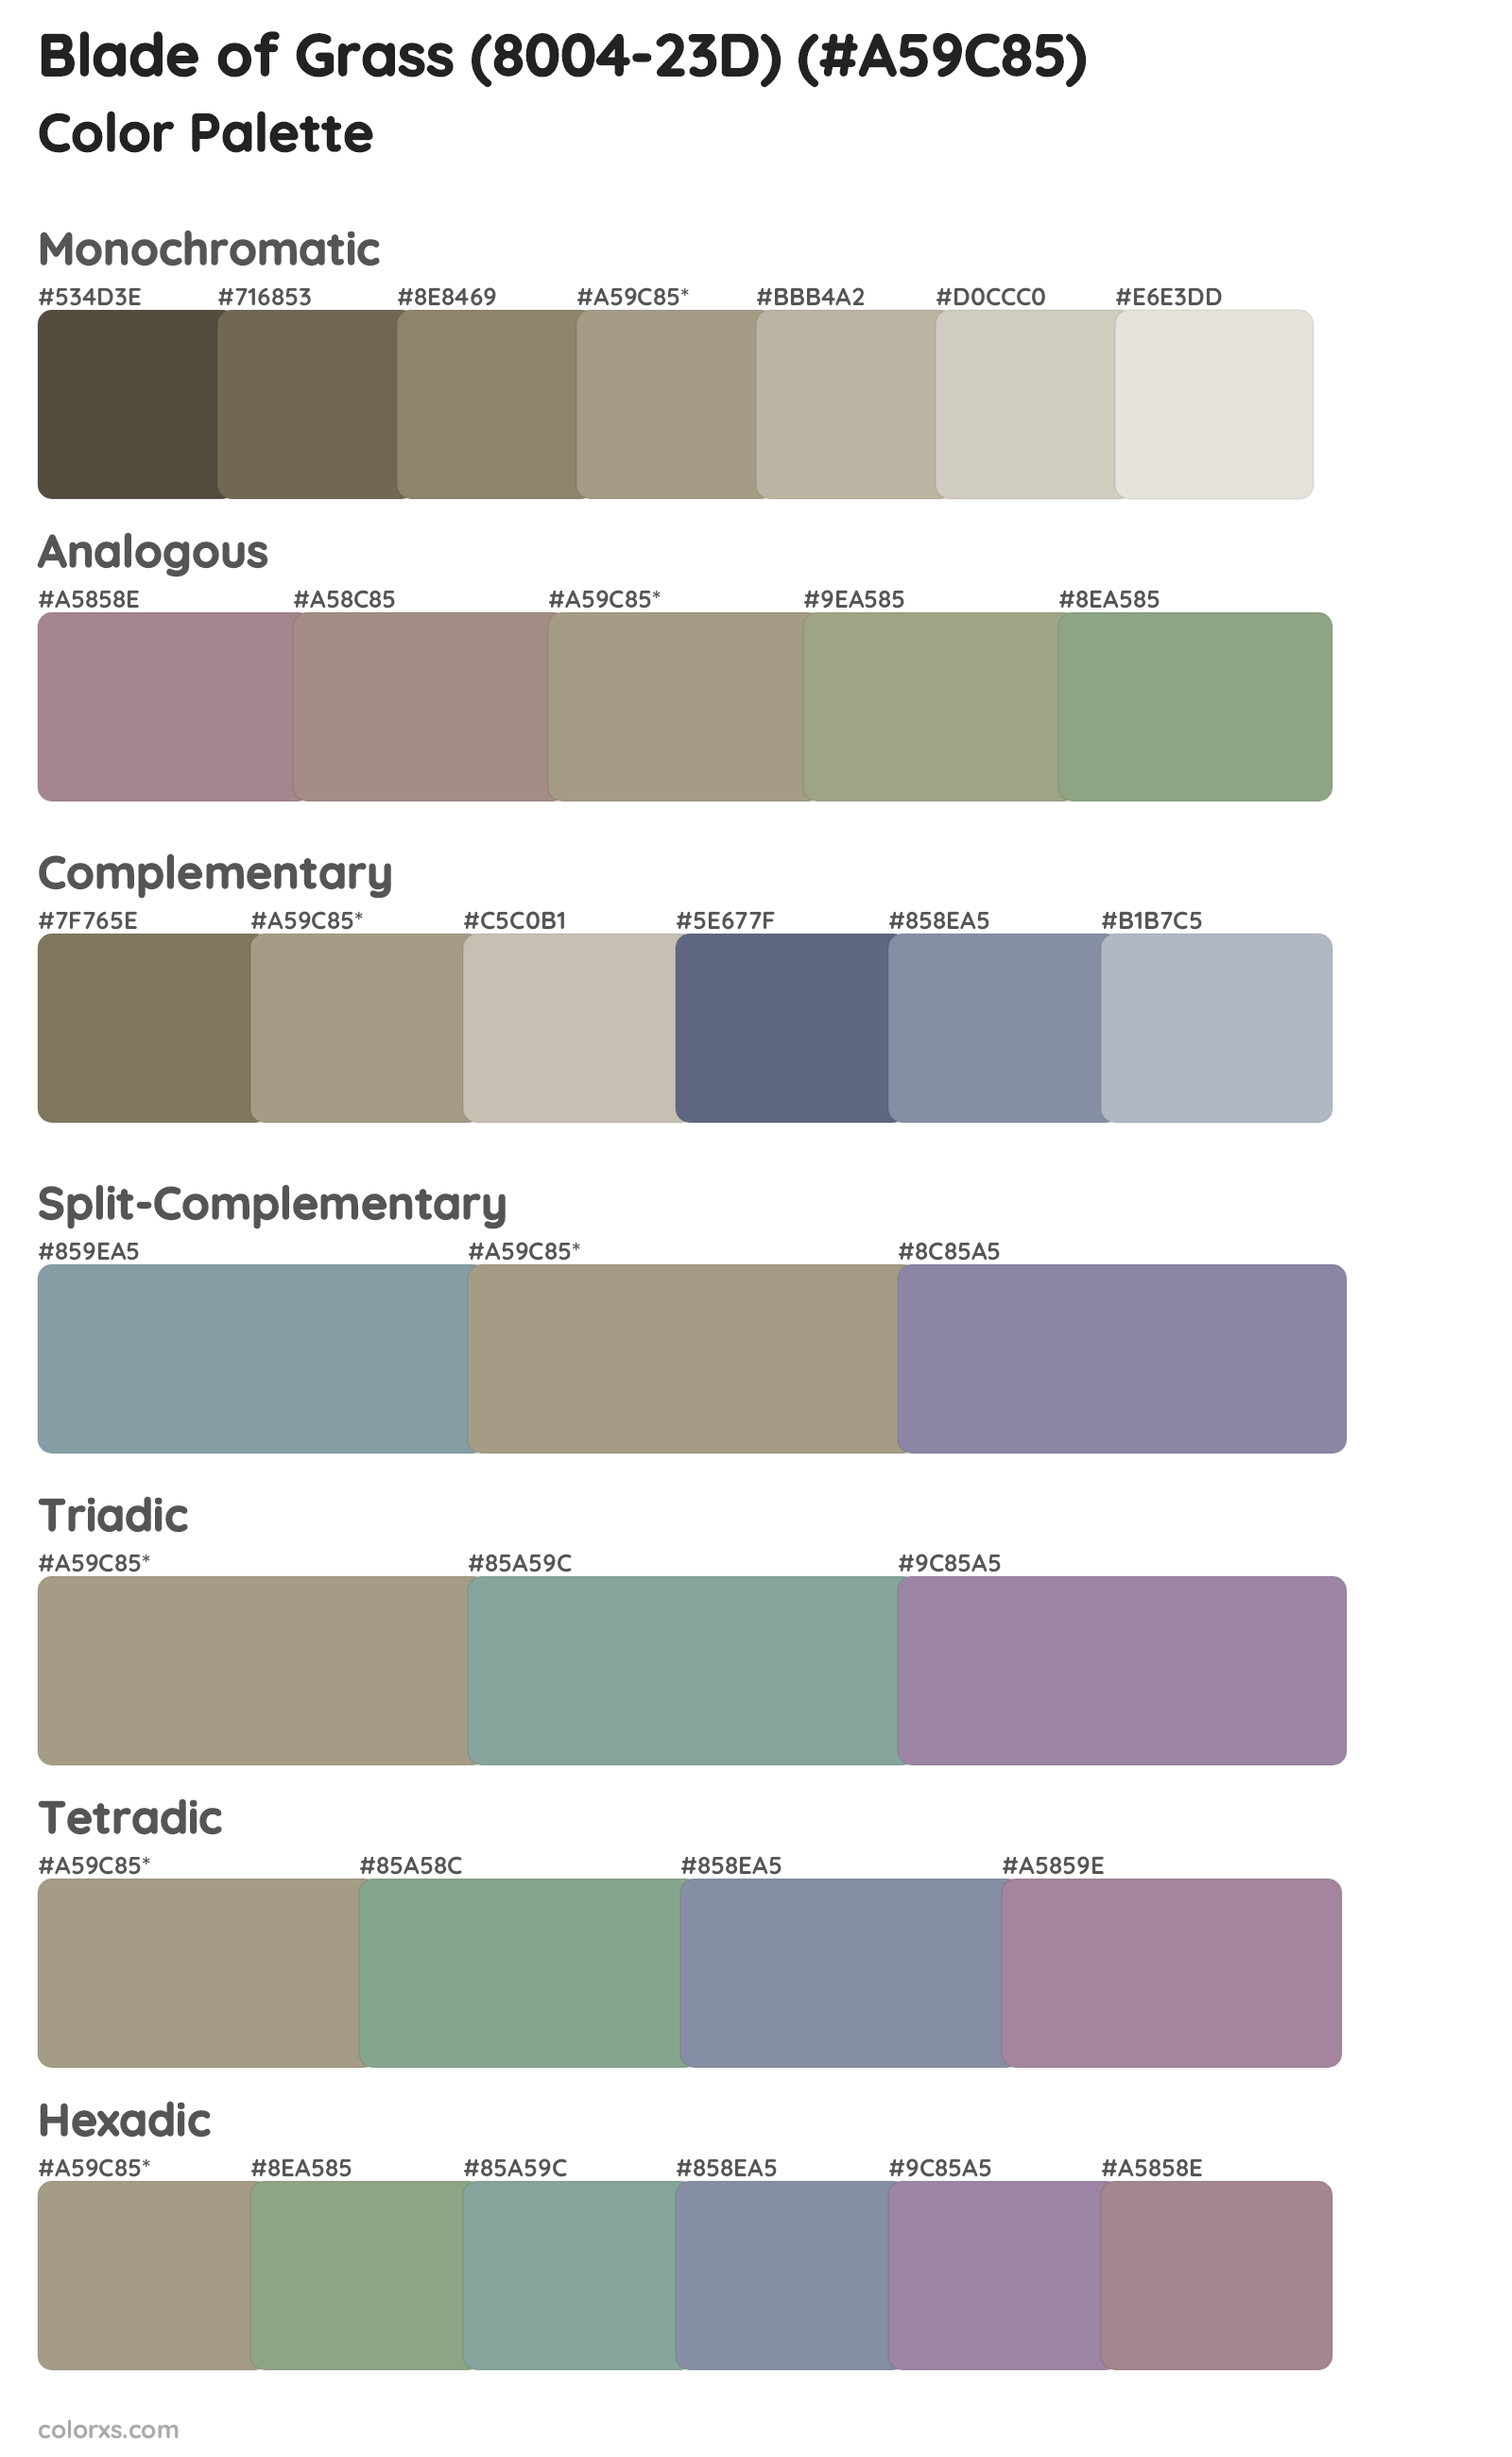 Blade of Grass (8004-23D) Color Scheme Palettes